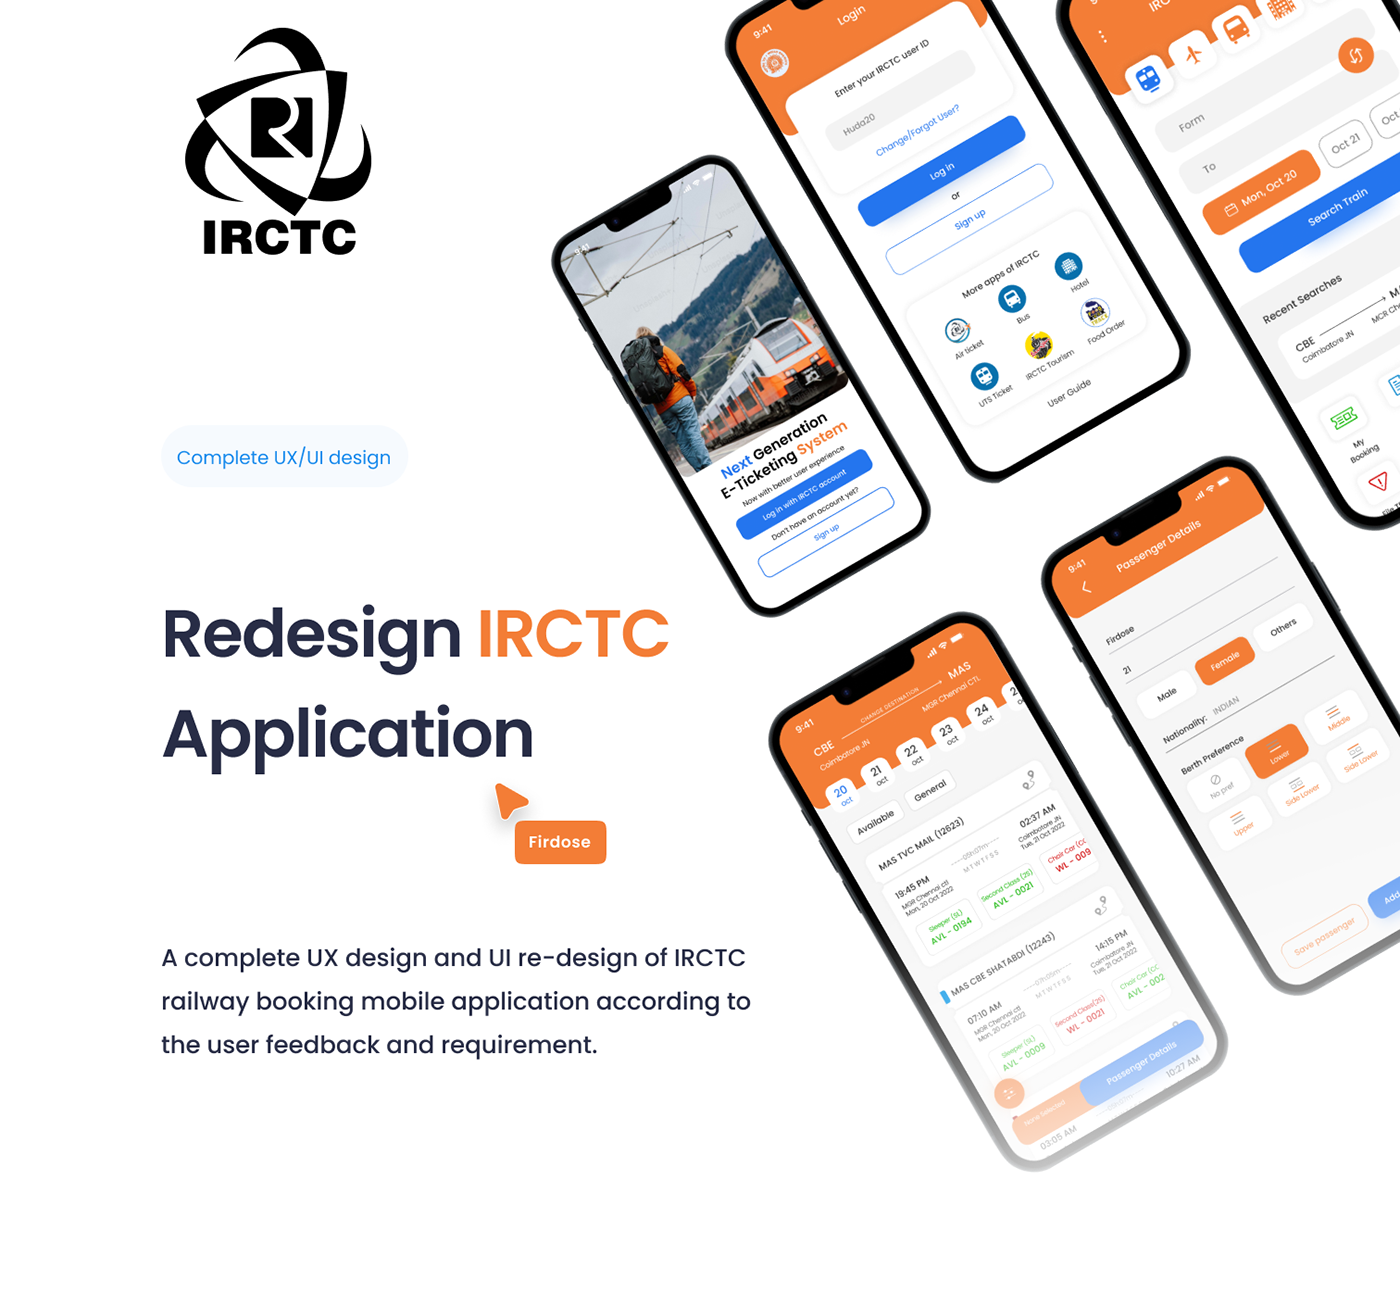 irctc redesign IRCTC Redesign train Travel UI/UX ui design ux app design railway